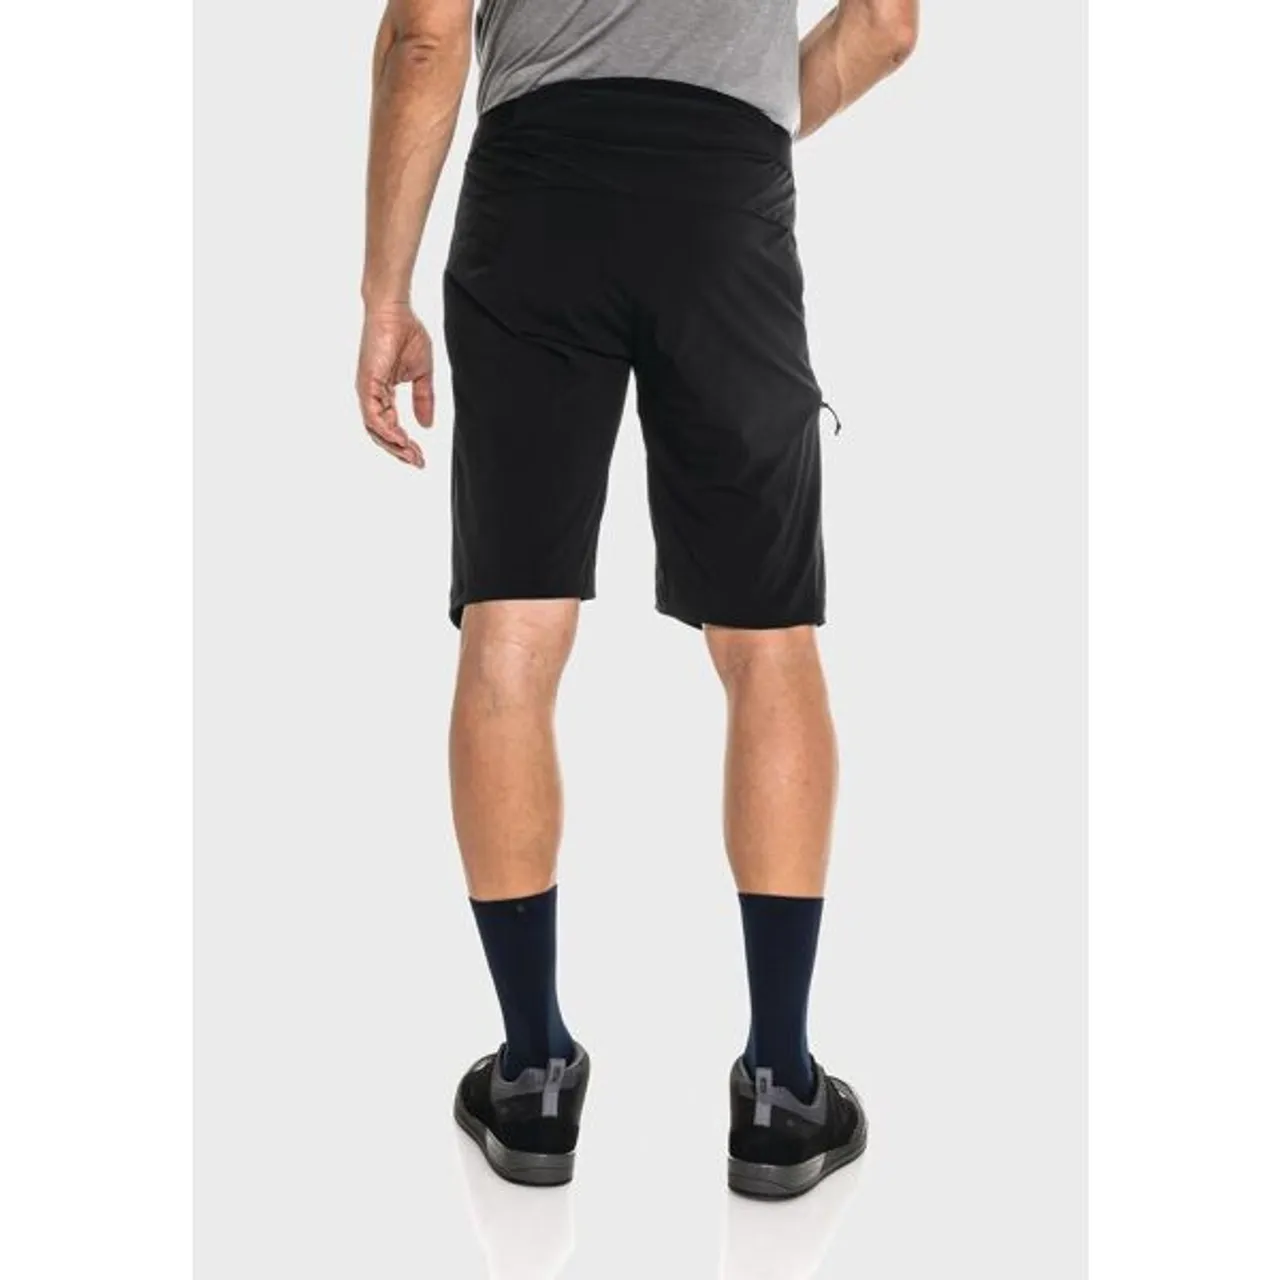 Shorts SCHÖFFEL "Shorts Mellow Trail M" Gr. 48, Normalgrößen, schwarz (9990, schwarz) Herren Hosen Shorts